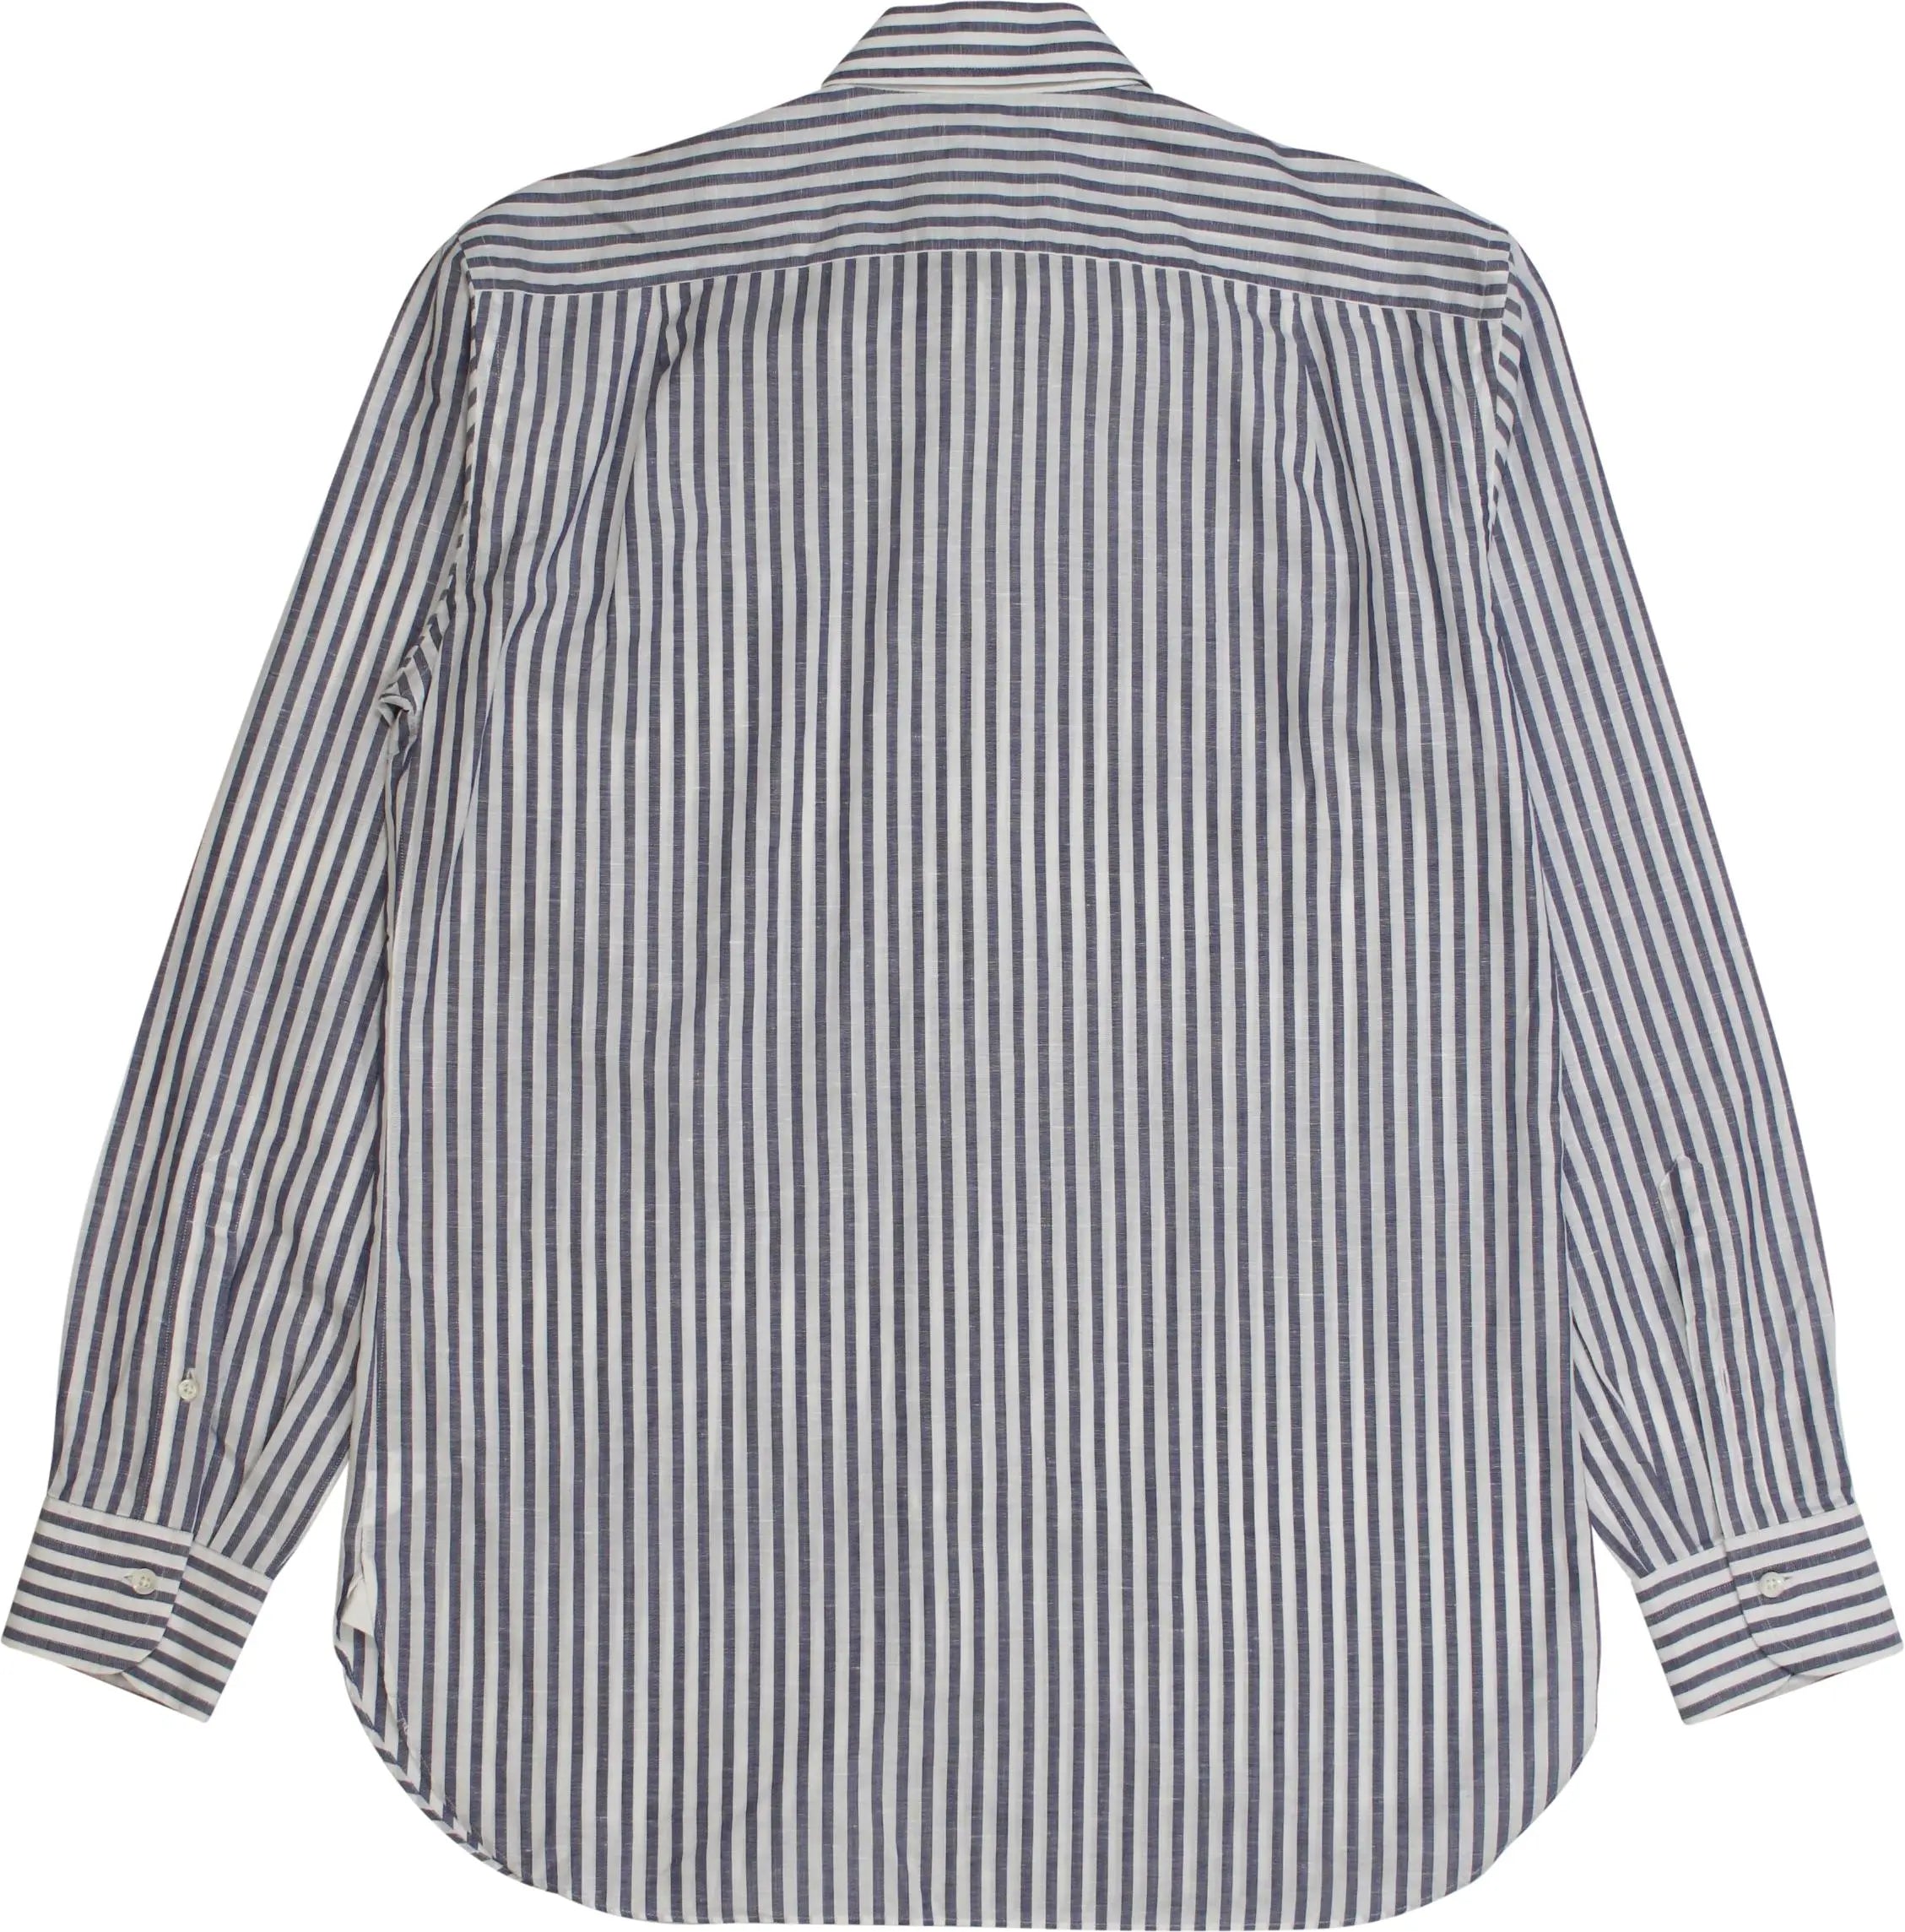 Ermenegildo Zegna - Striped Linen Shirt by Ermenegildo Zegna- ThriftTale.com - Vintage and second handclothing